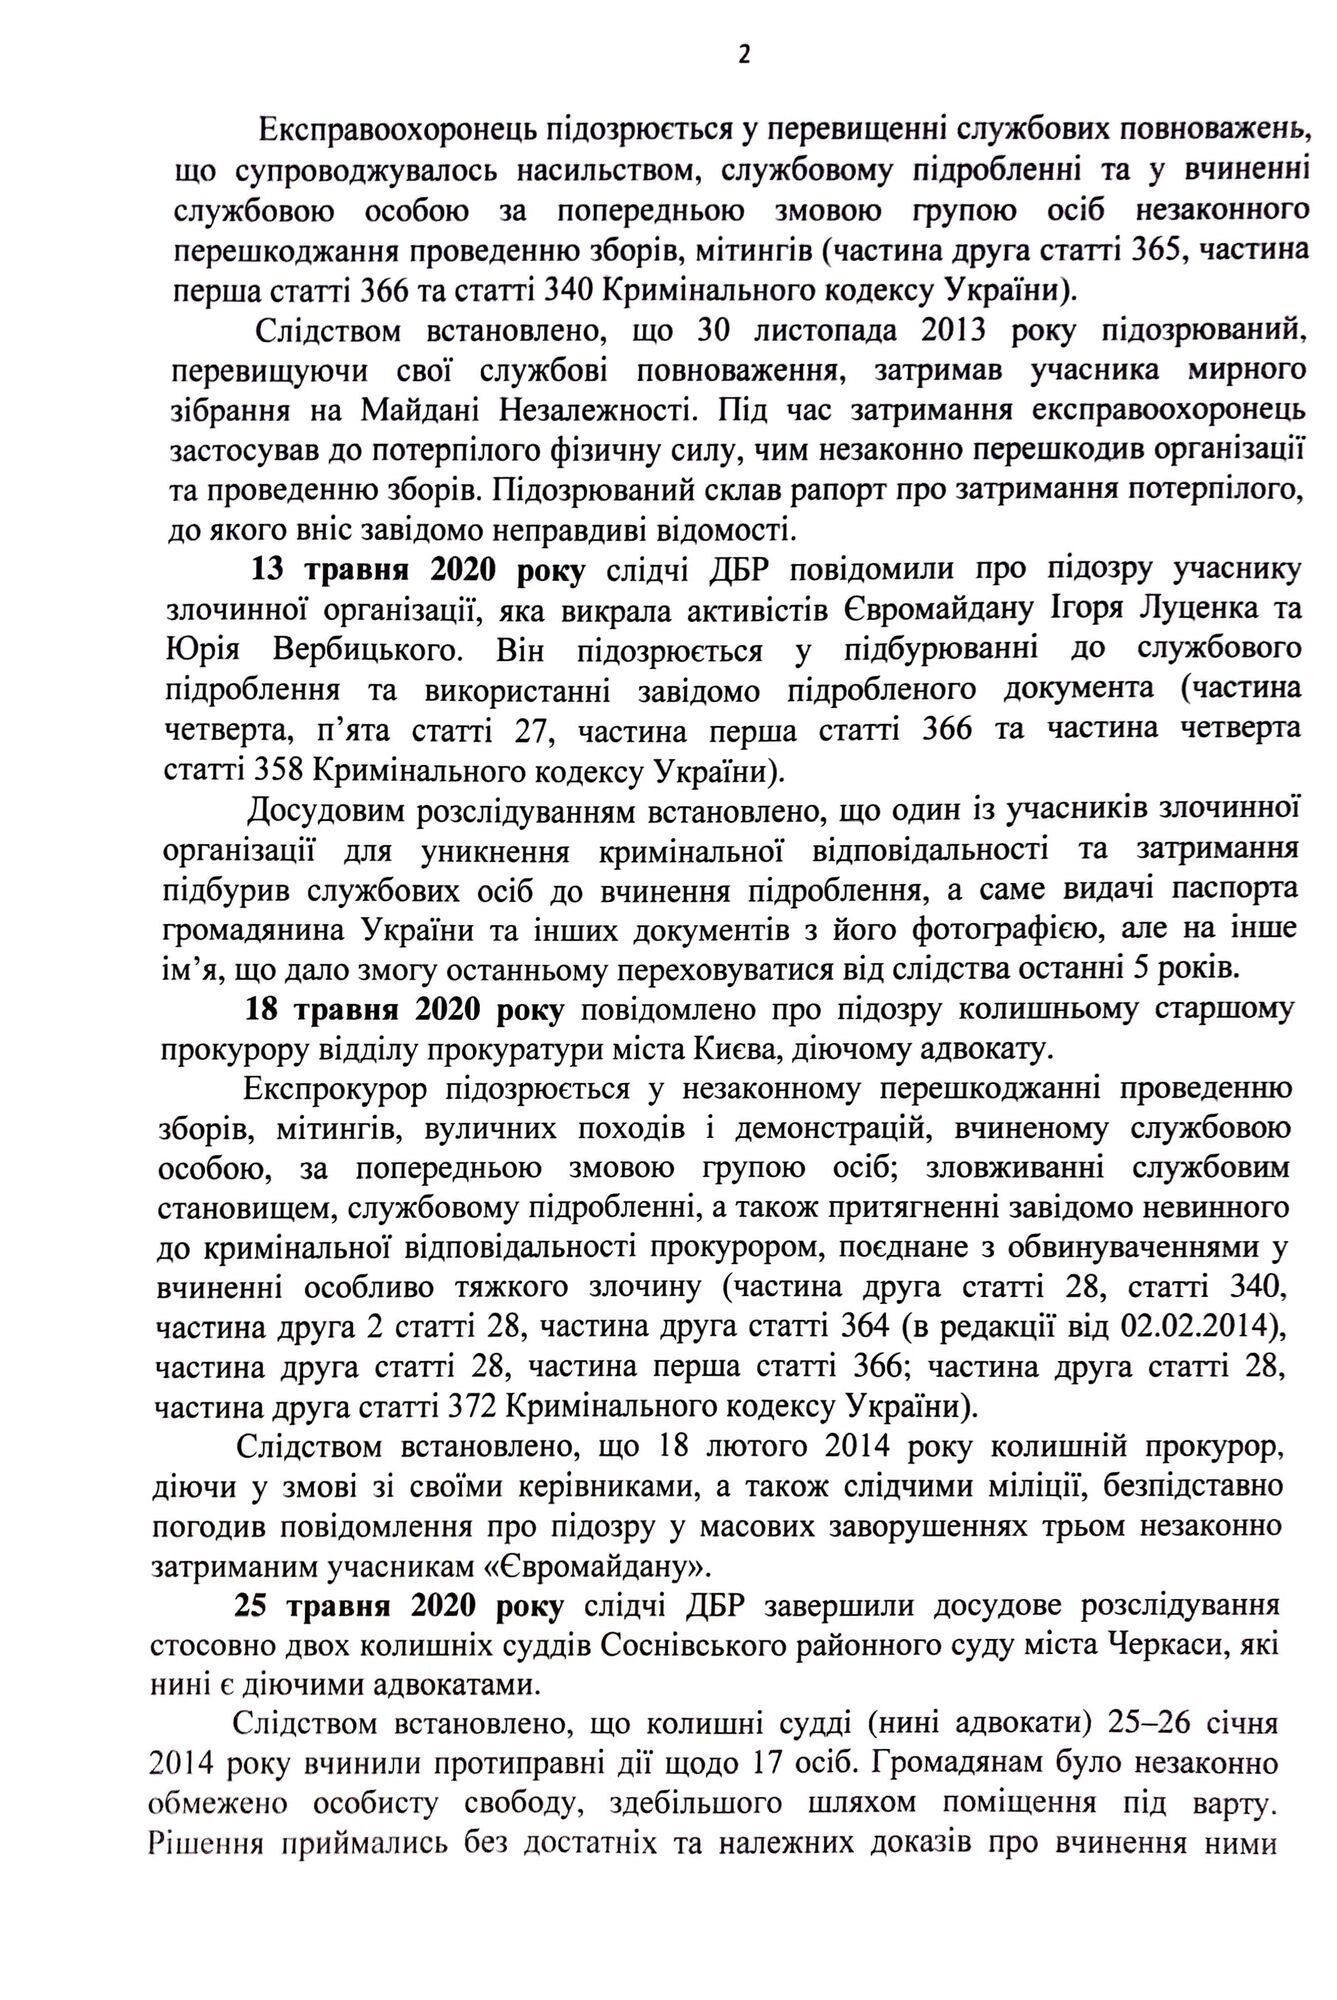 Звіт про розслідування «справ Майдану» за травень 2020 року